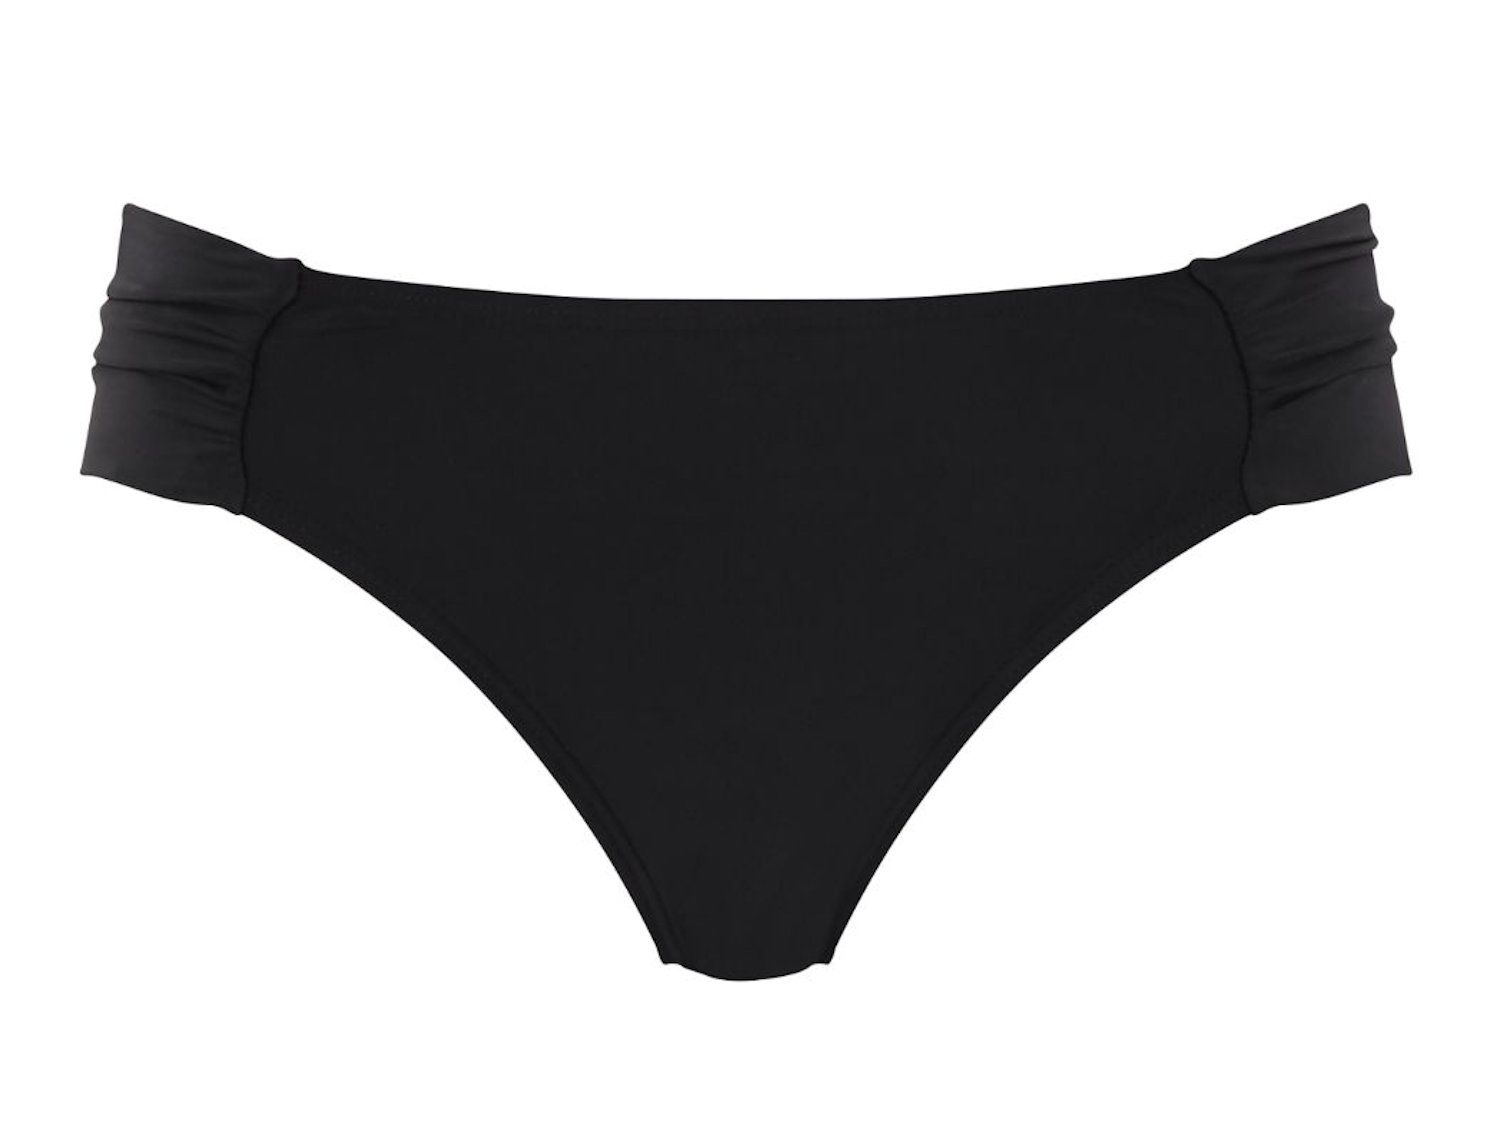 Panache Swimwear Anya Riva Gather Pant Black | Lumingerie bras and ...